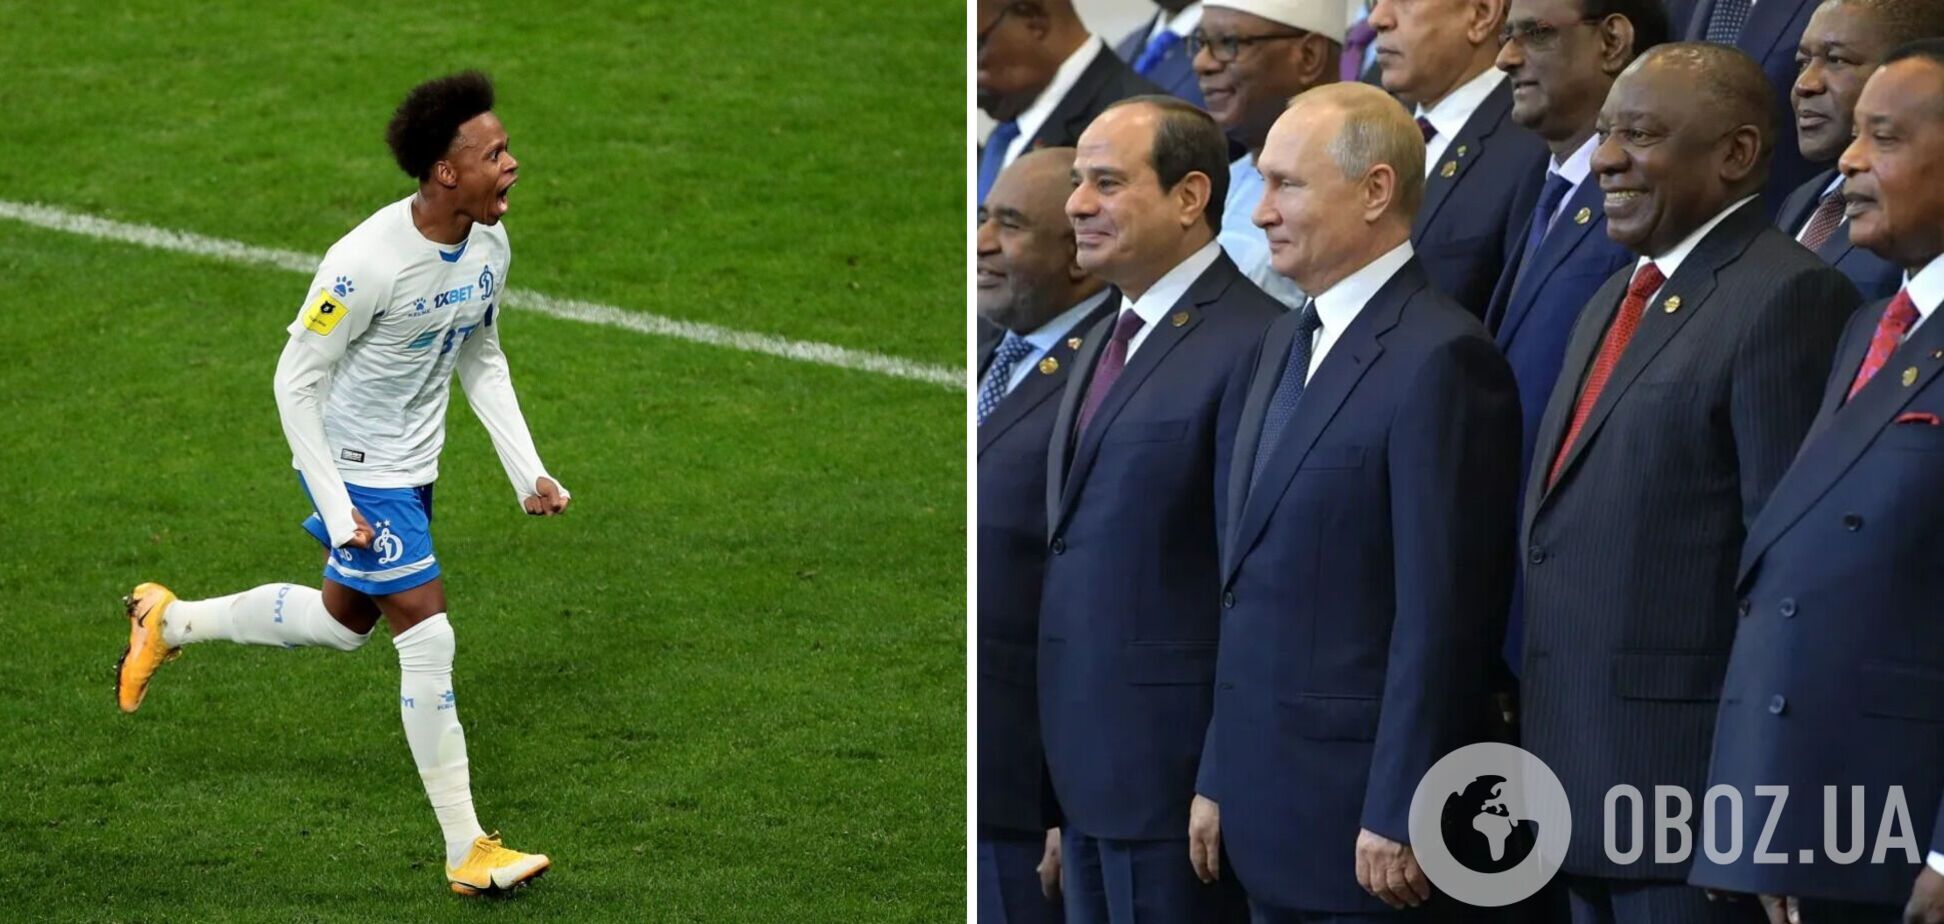 Футболіст російського клубу заявив, що 'Путіна дуже люблять в Африці'. У мережі посміялися